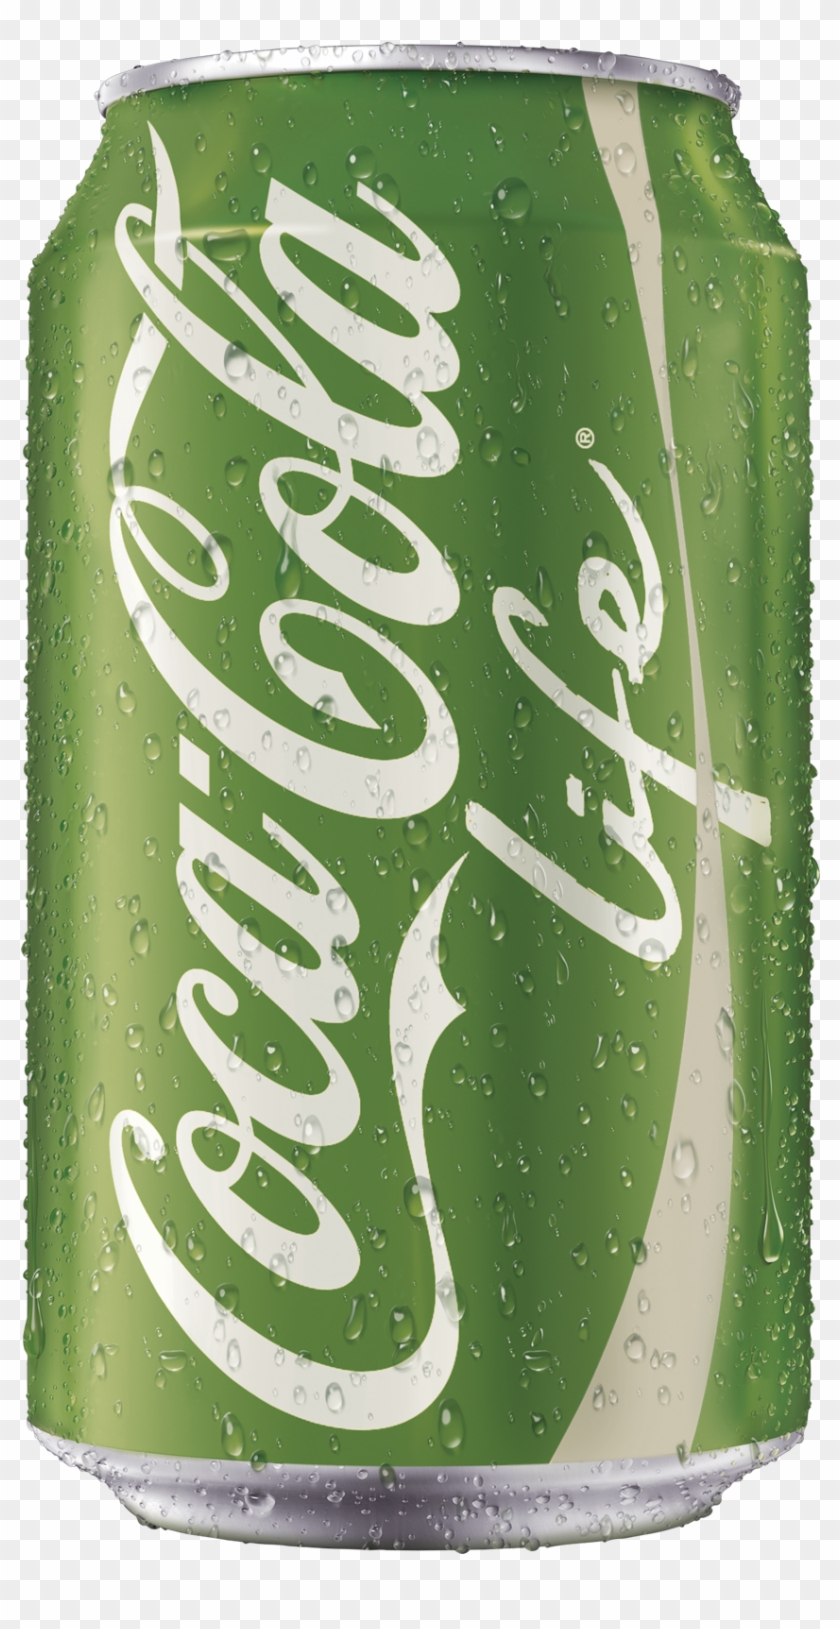 Coca Cola Life Is A Drink I Chose To Represent Mixed - Coca Cola Clipart #3194858